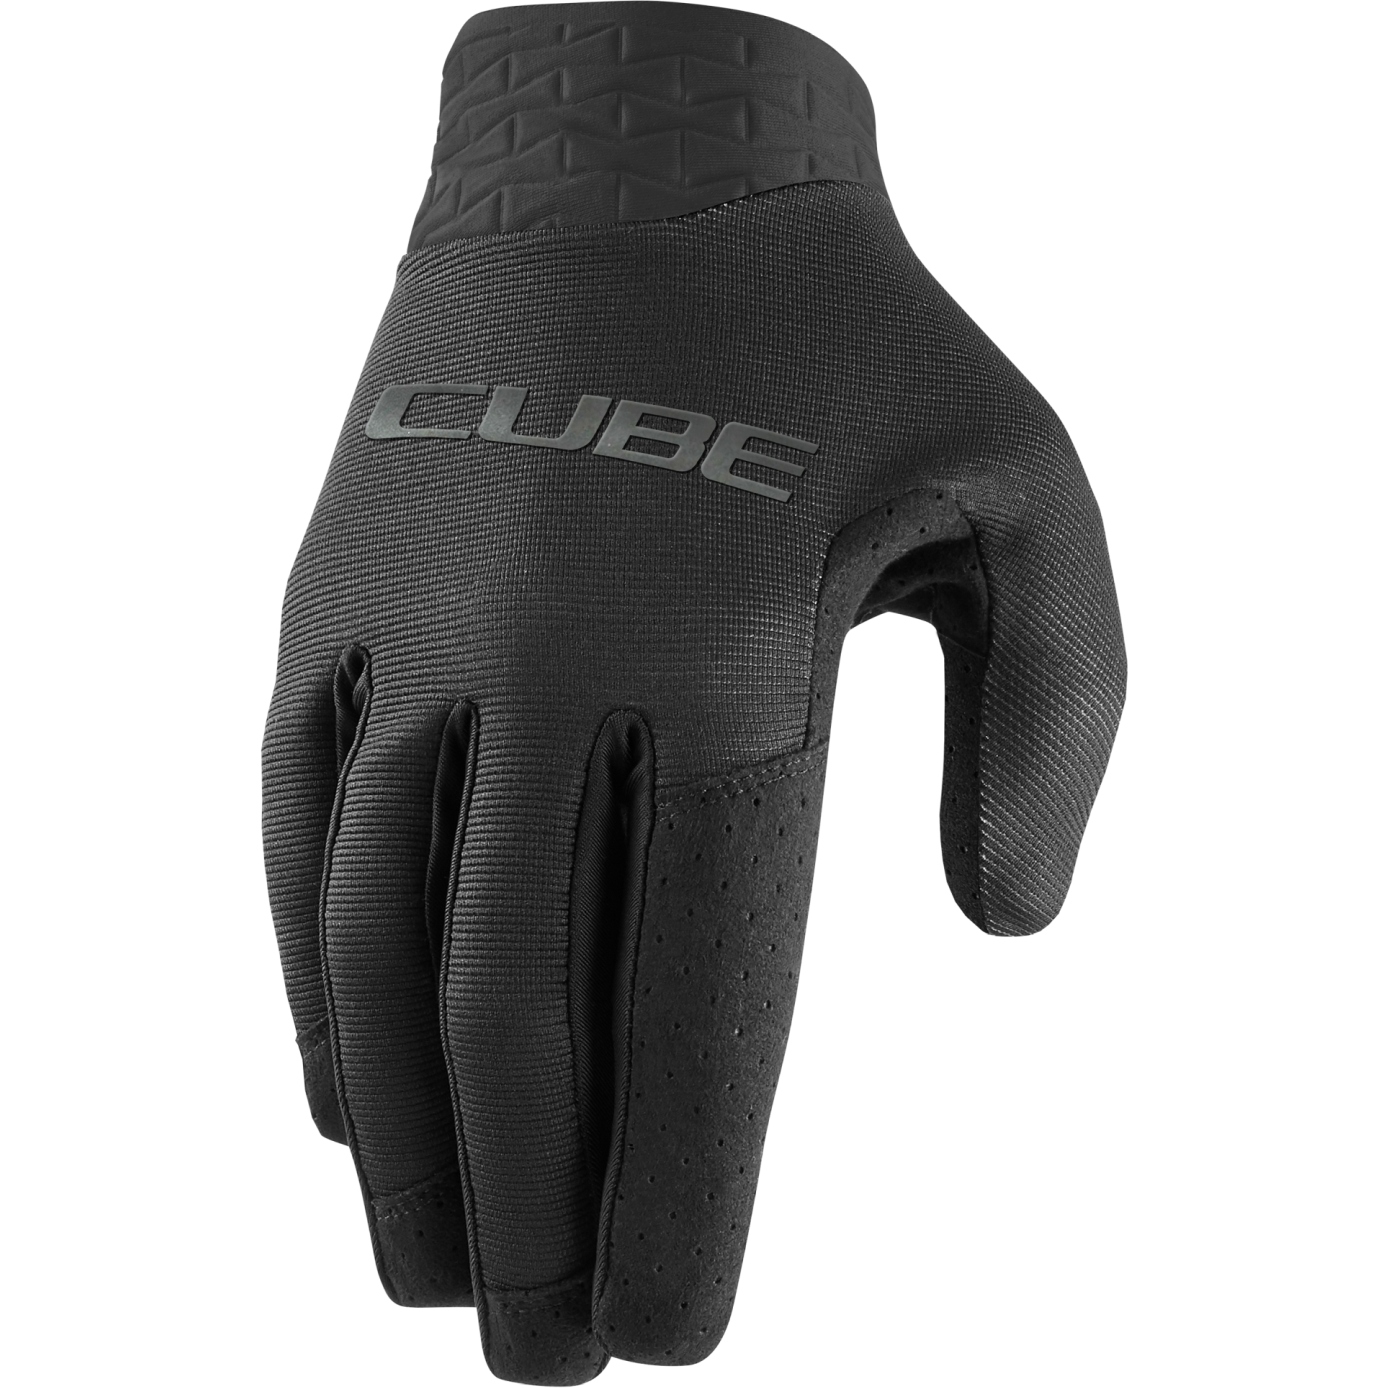 Produktbild von CUBE Performance Vollfinger-Handschuhe - schwarz